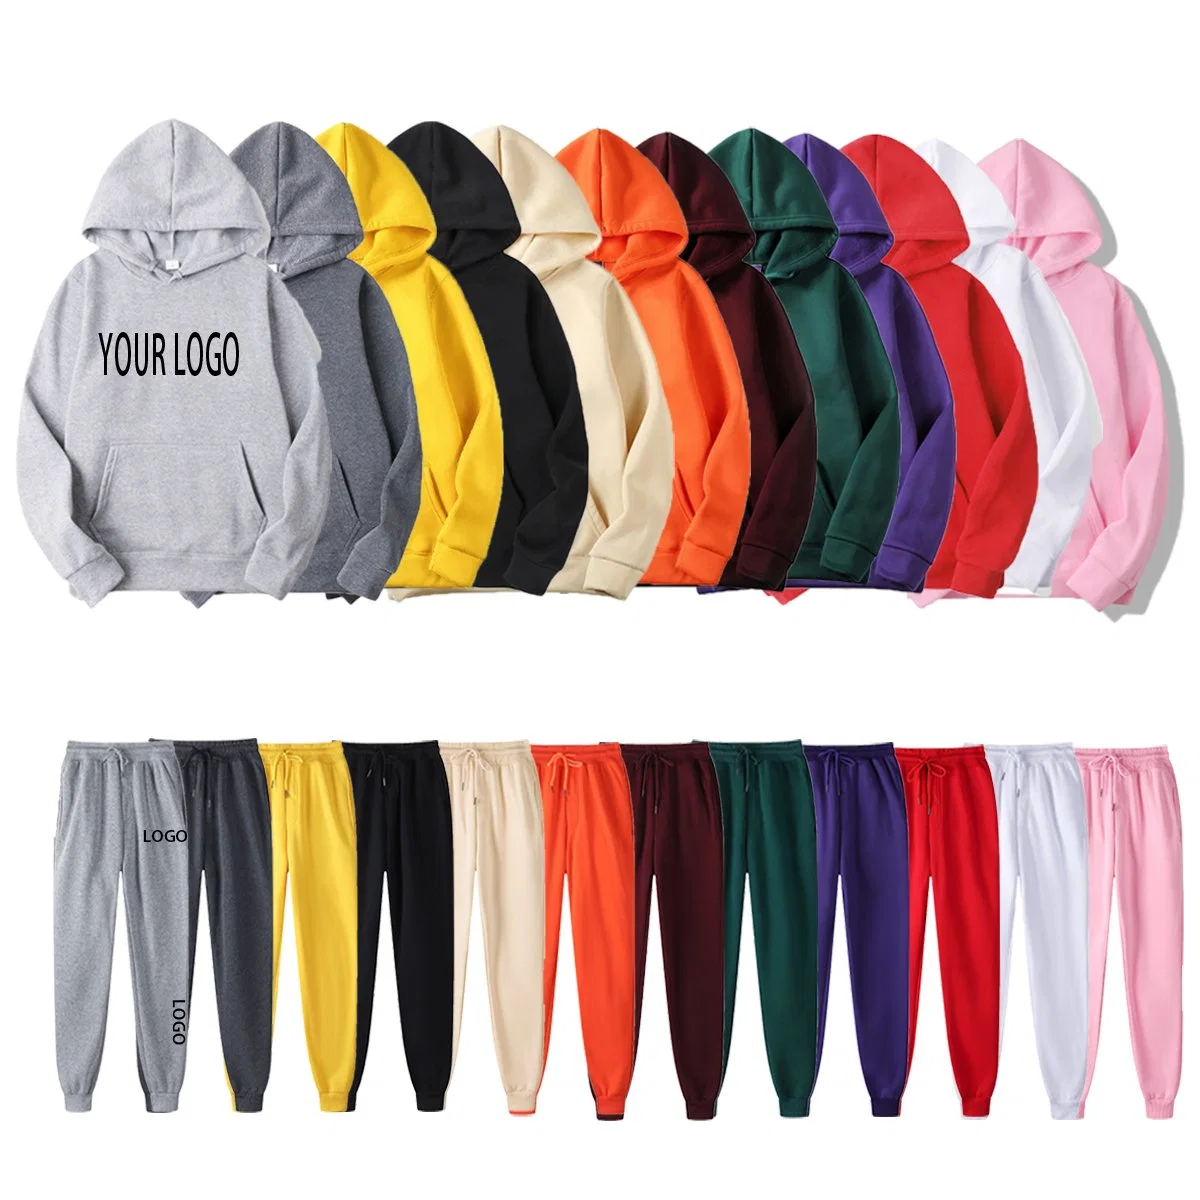 El algodón de gran tamaño de logotipo personalizado Manufactur Streetwear colorido juego de los Hombres sudadera con capucha Sudadera Hombres sudadera con capucha simple suéter sudaderas con capucha para hombres